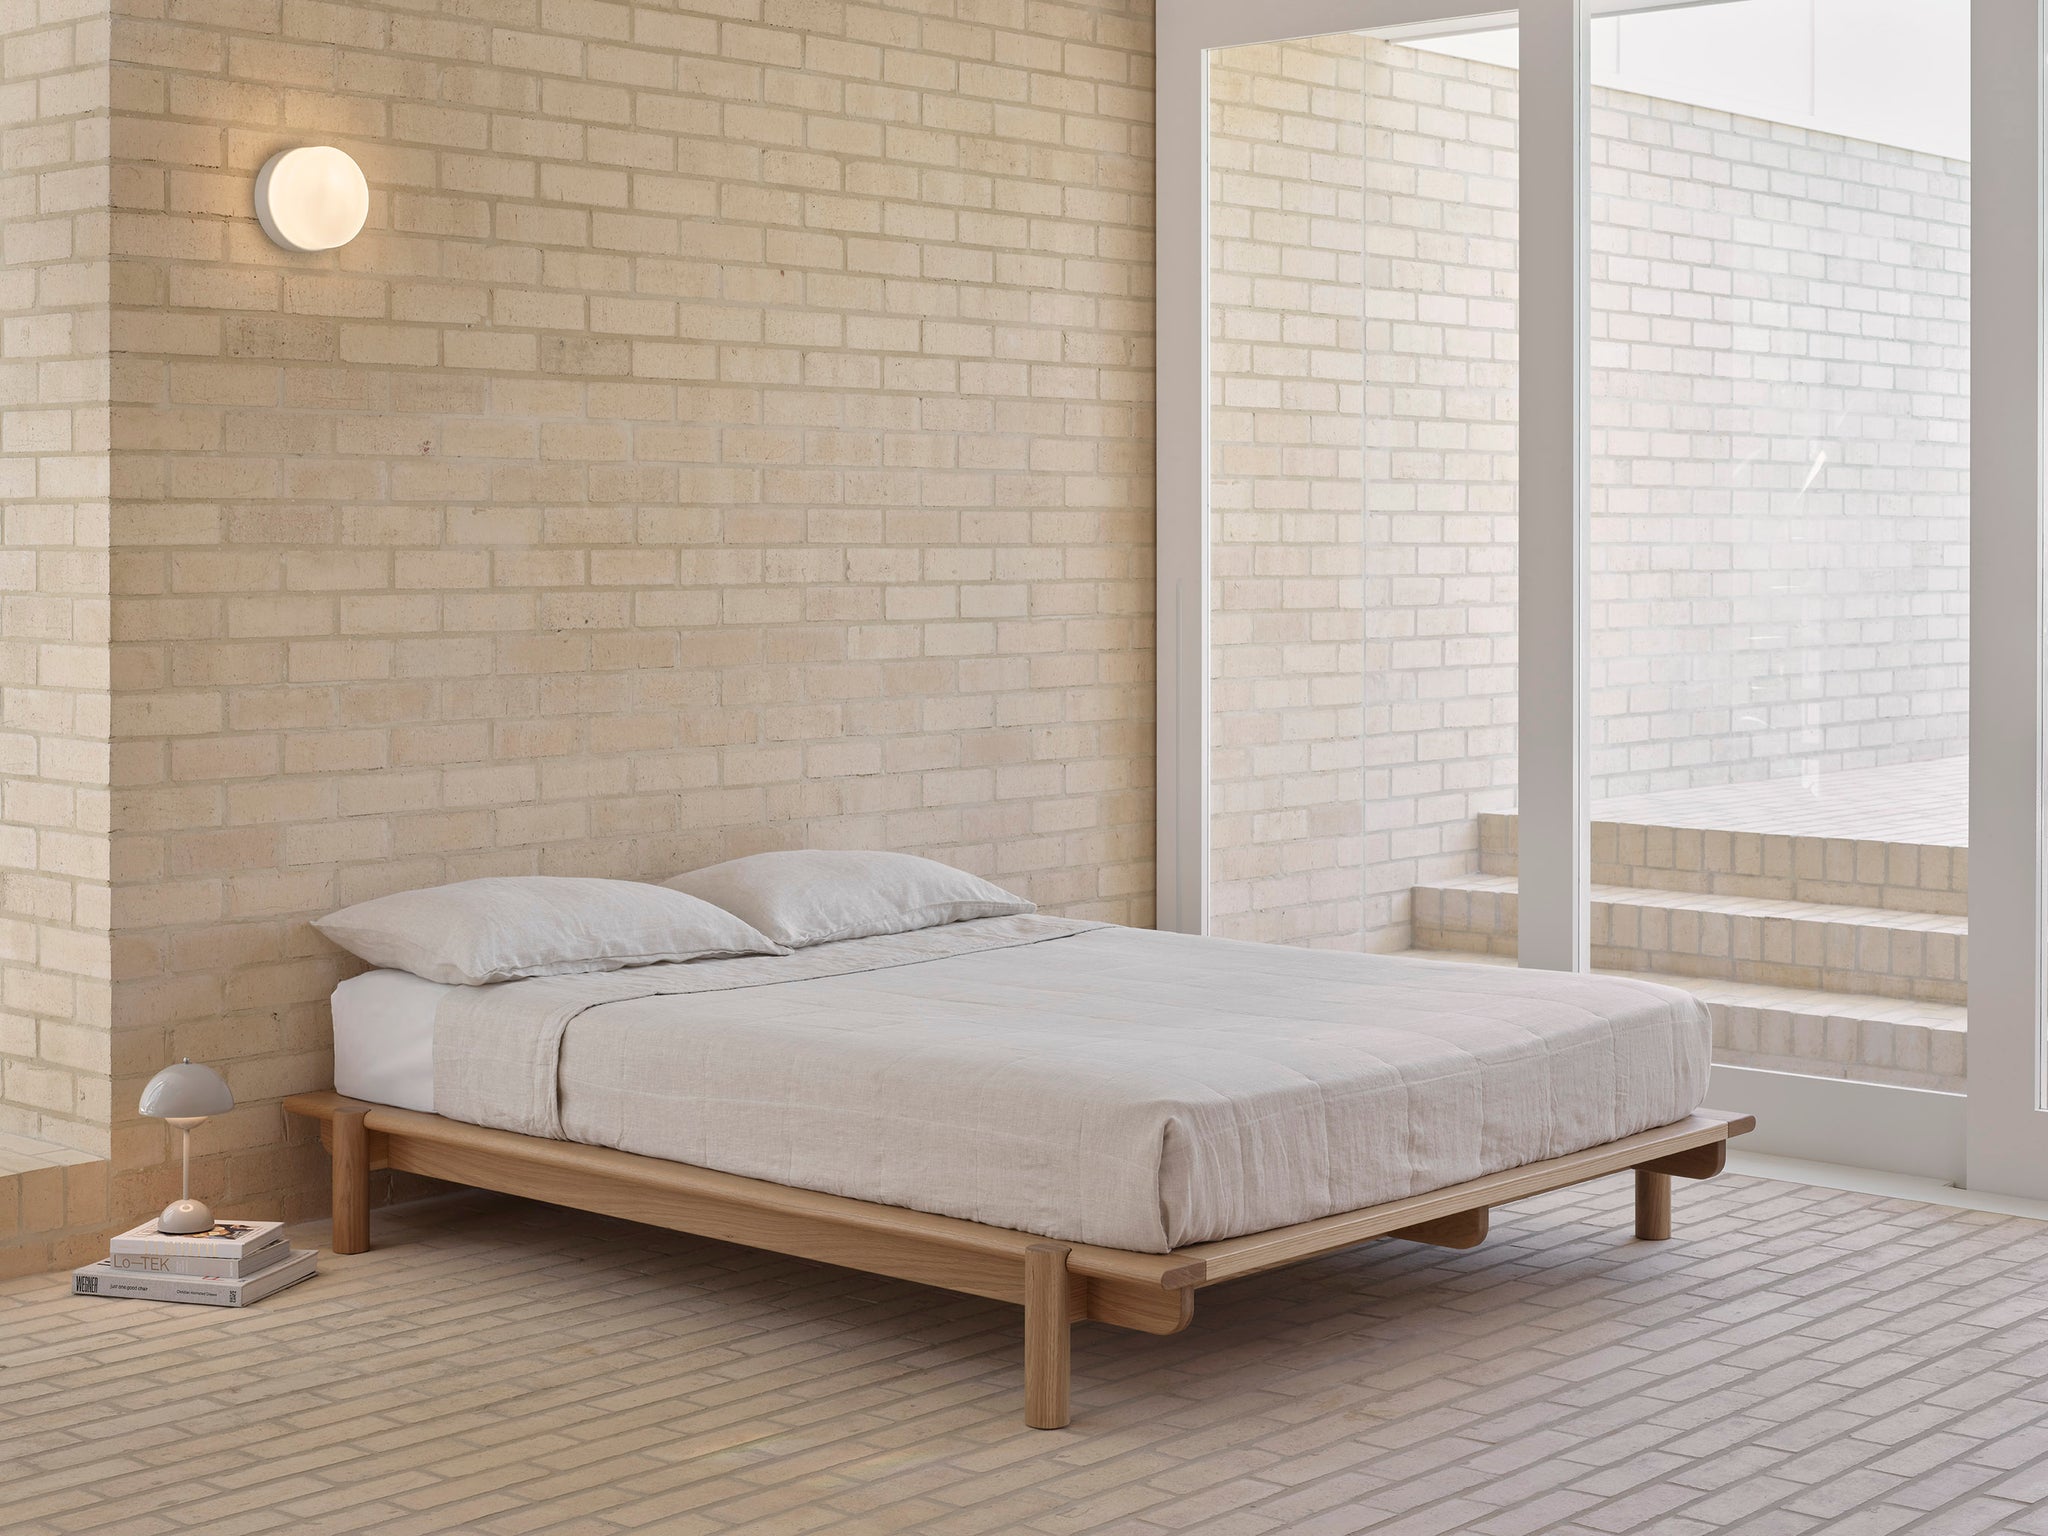 Title Bed 01 in white oak in a modern, brick home